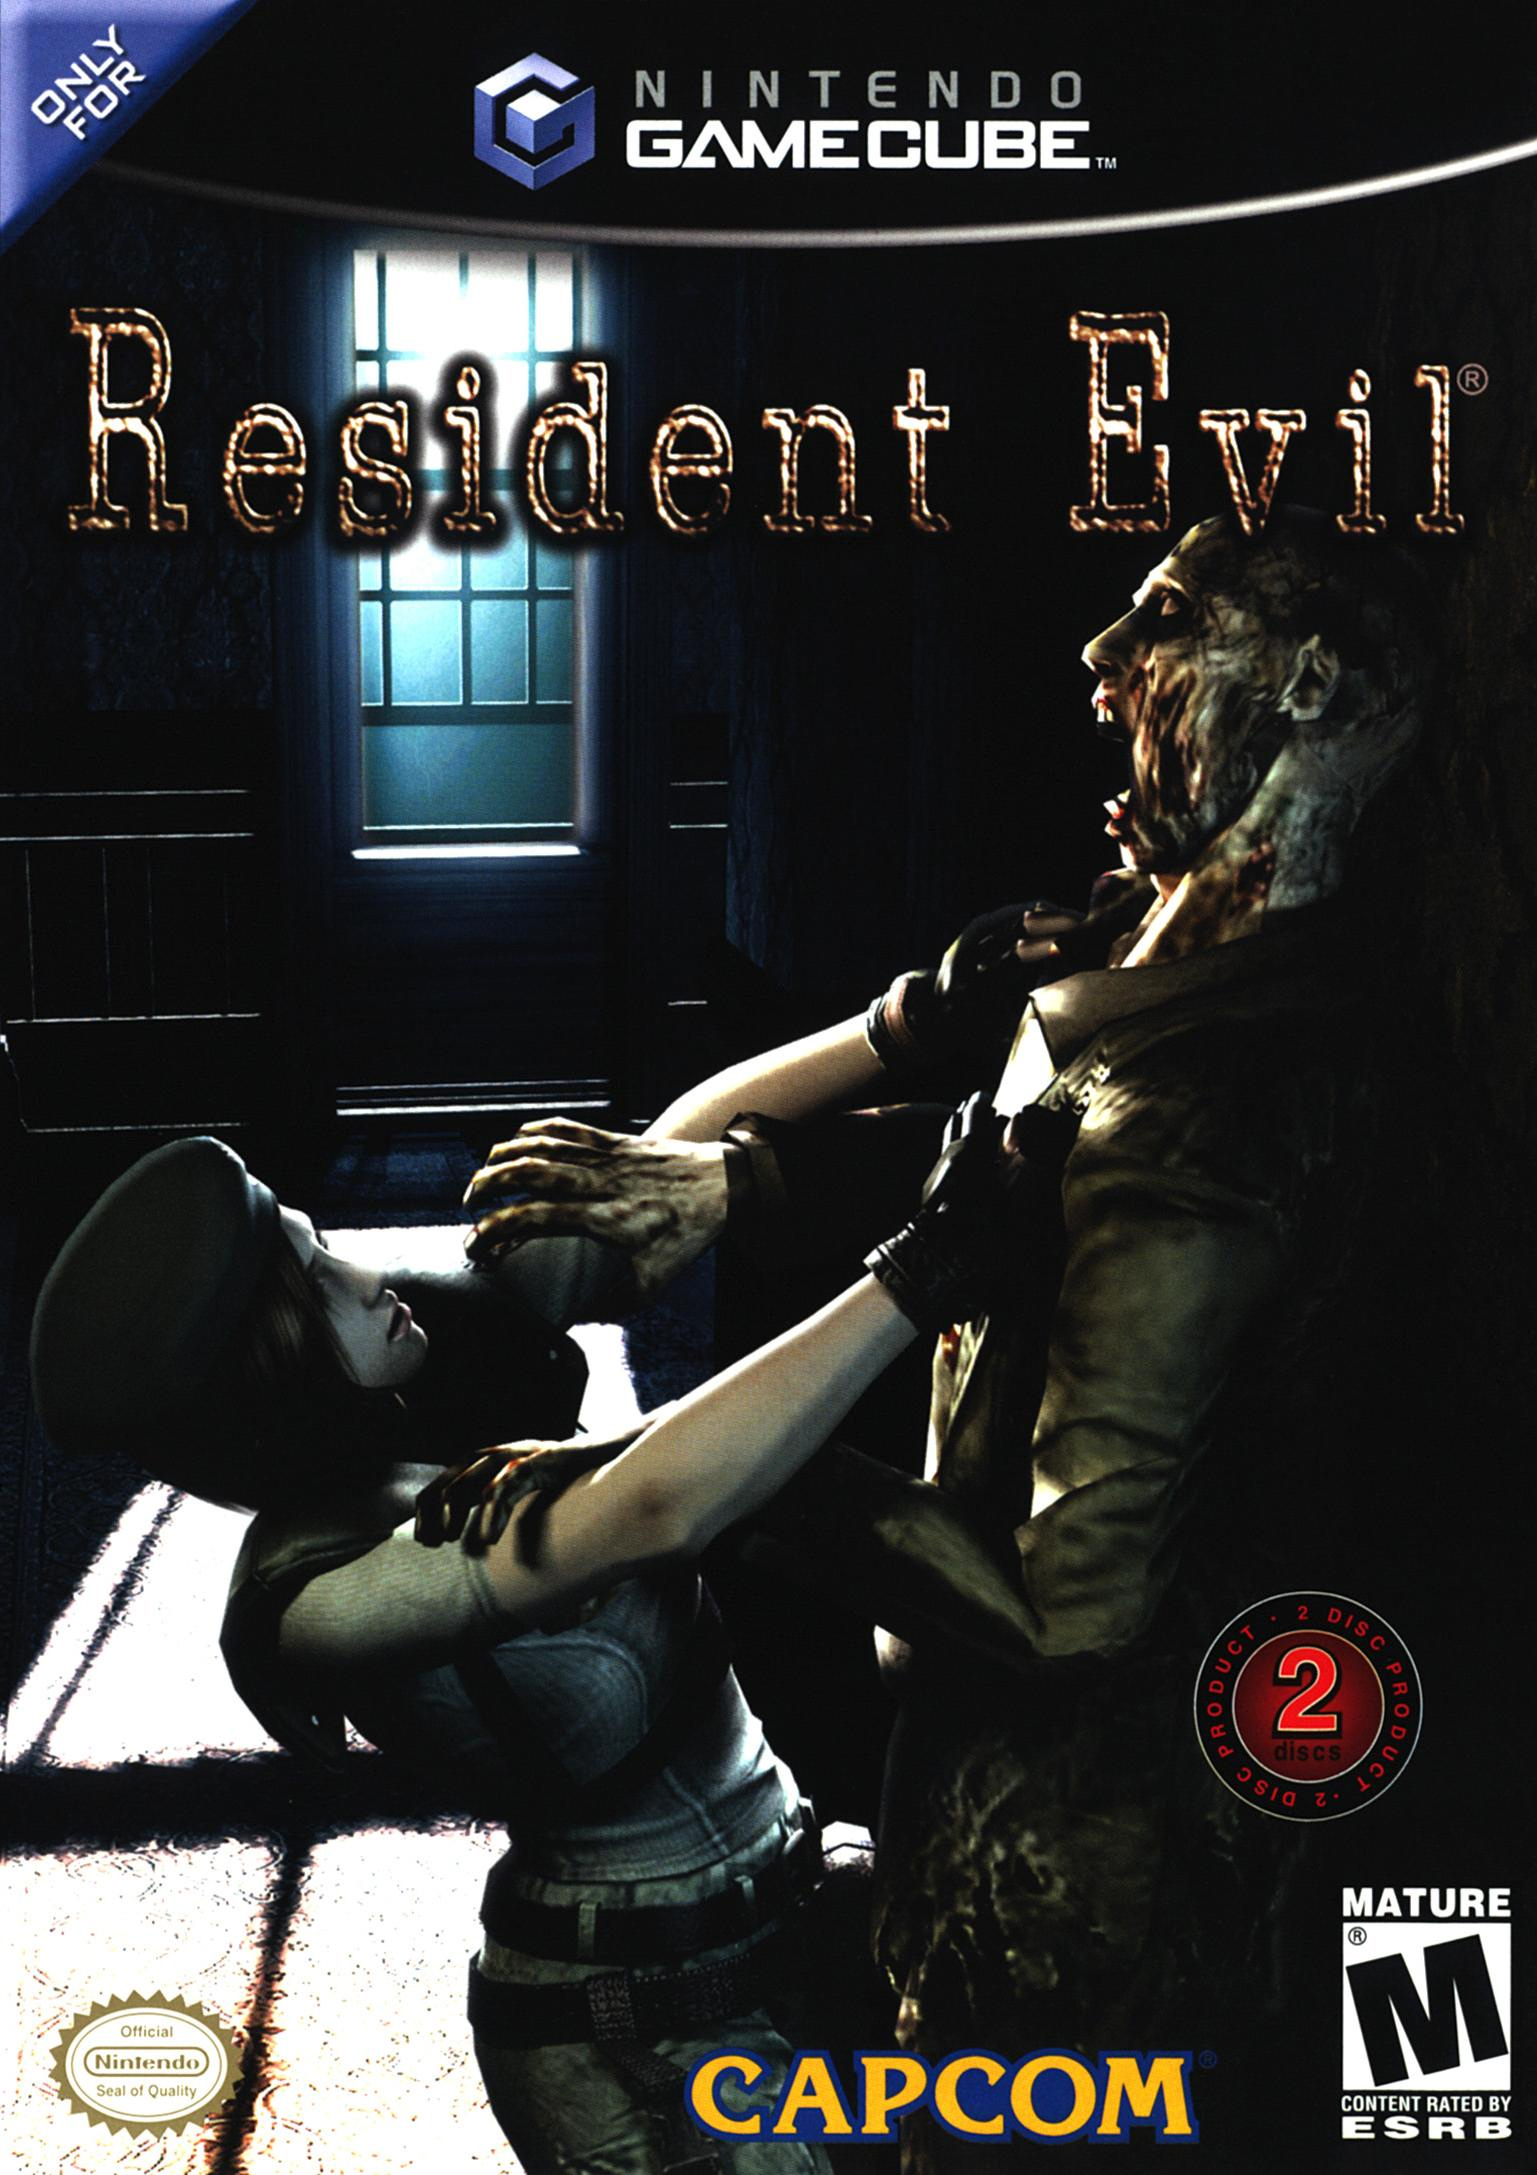 Resident-evil-cover.jpg